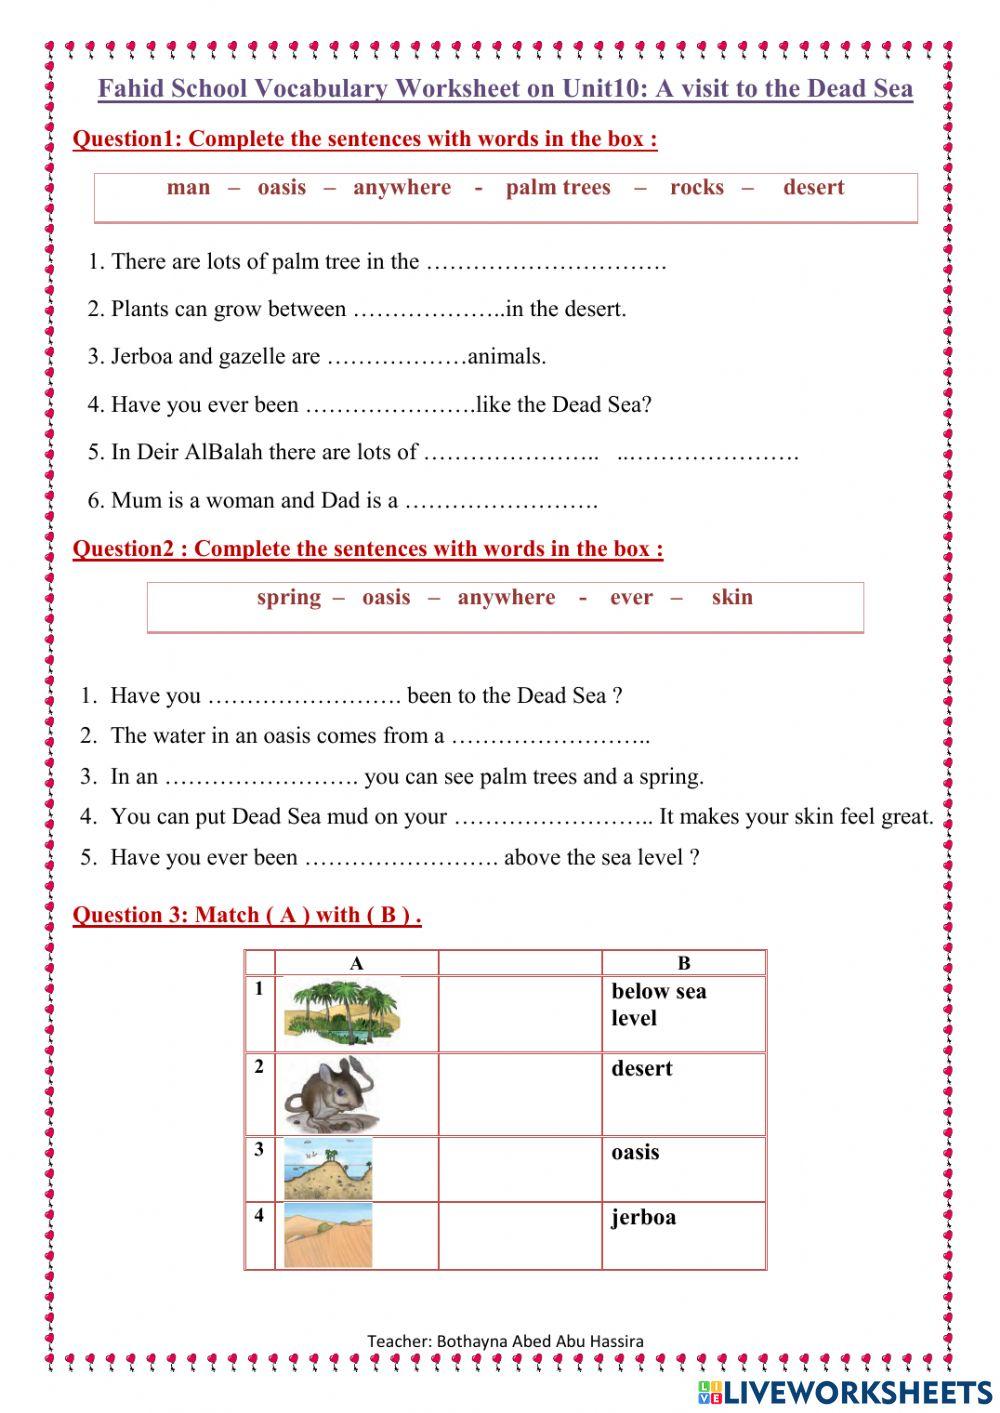 Unit 10: Vocabulary Worksheet